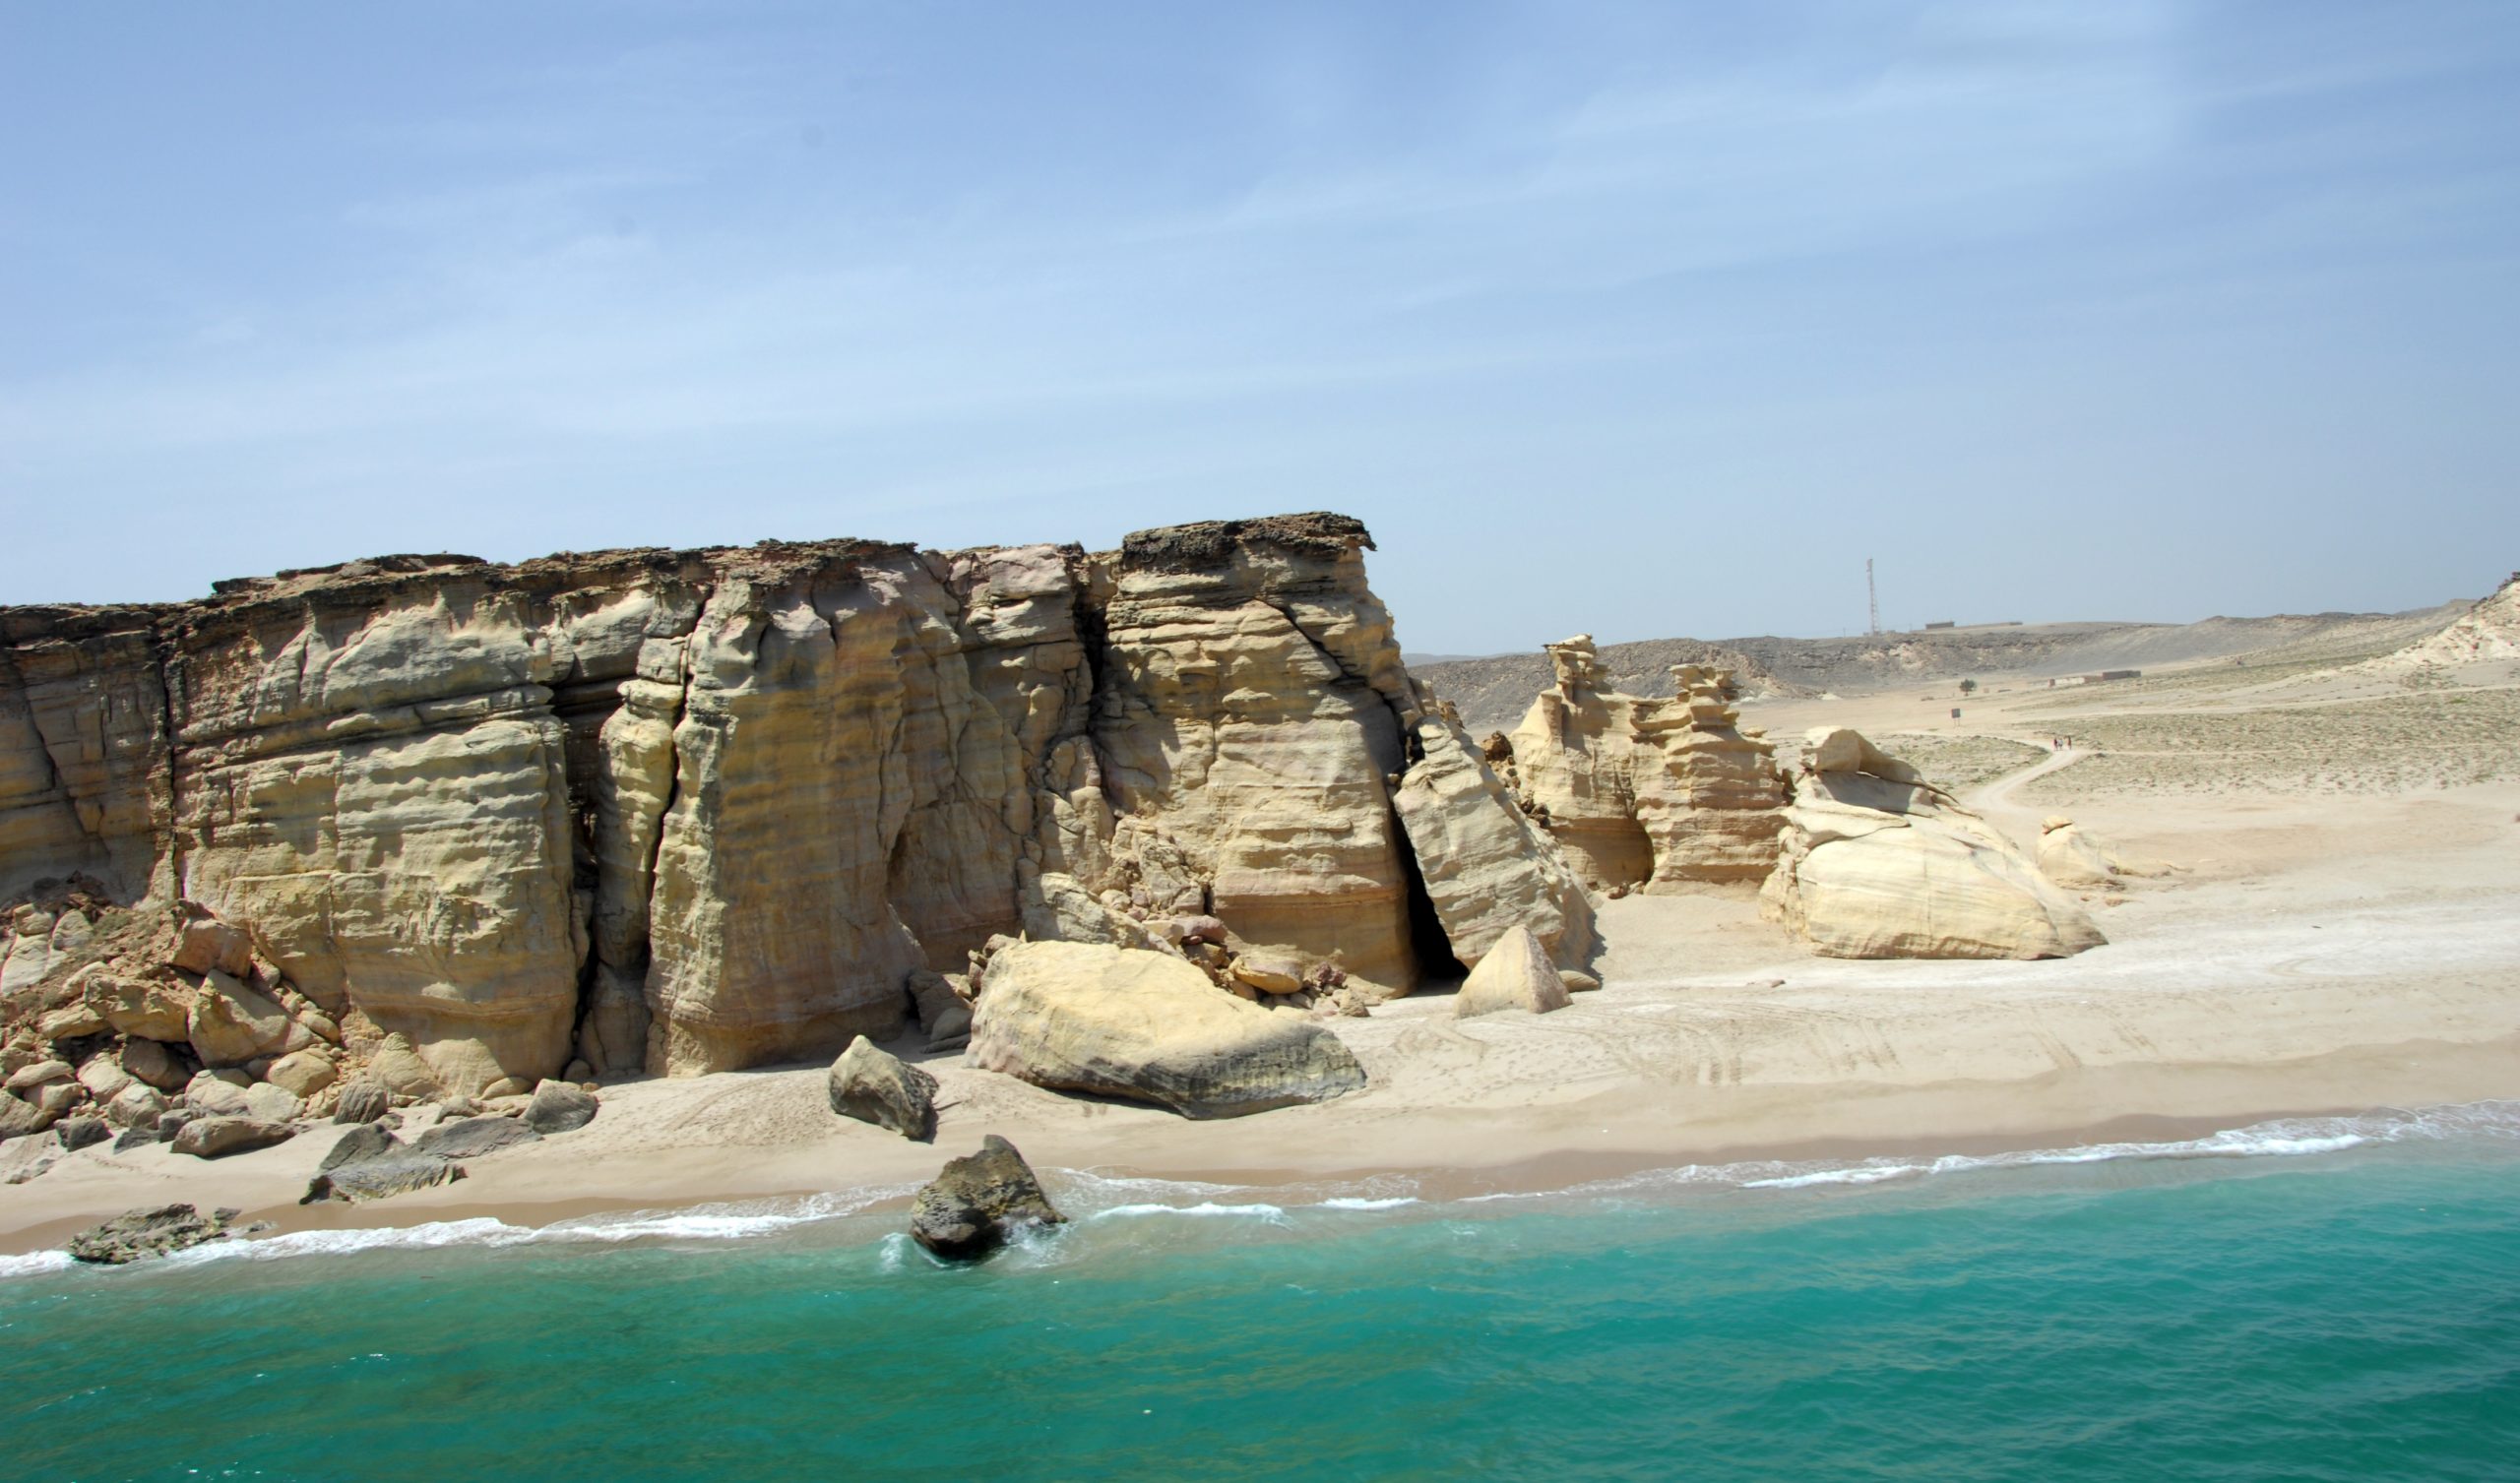 كفاءة الطاقة سلاح سلطنة عمان لحماية طبفة الأوزون